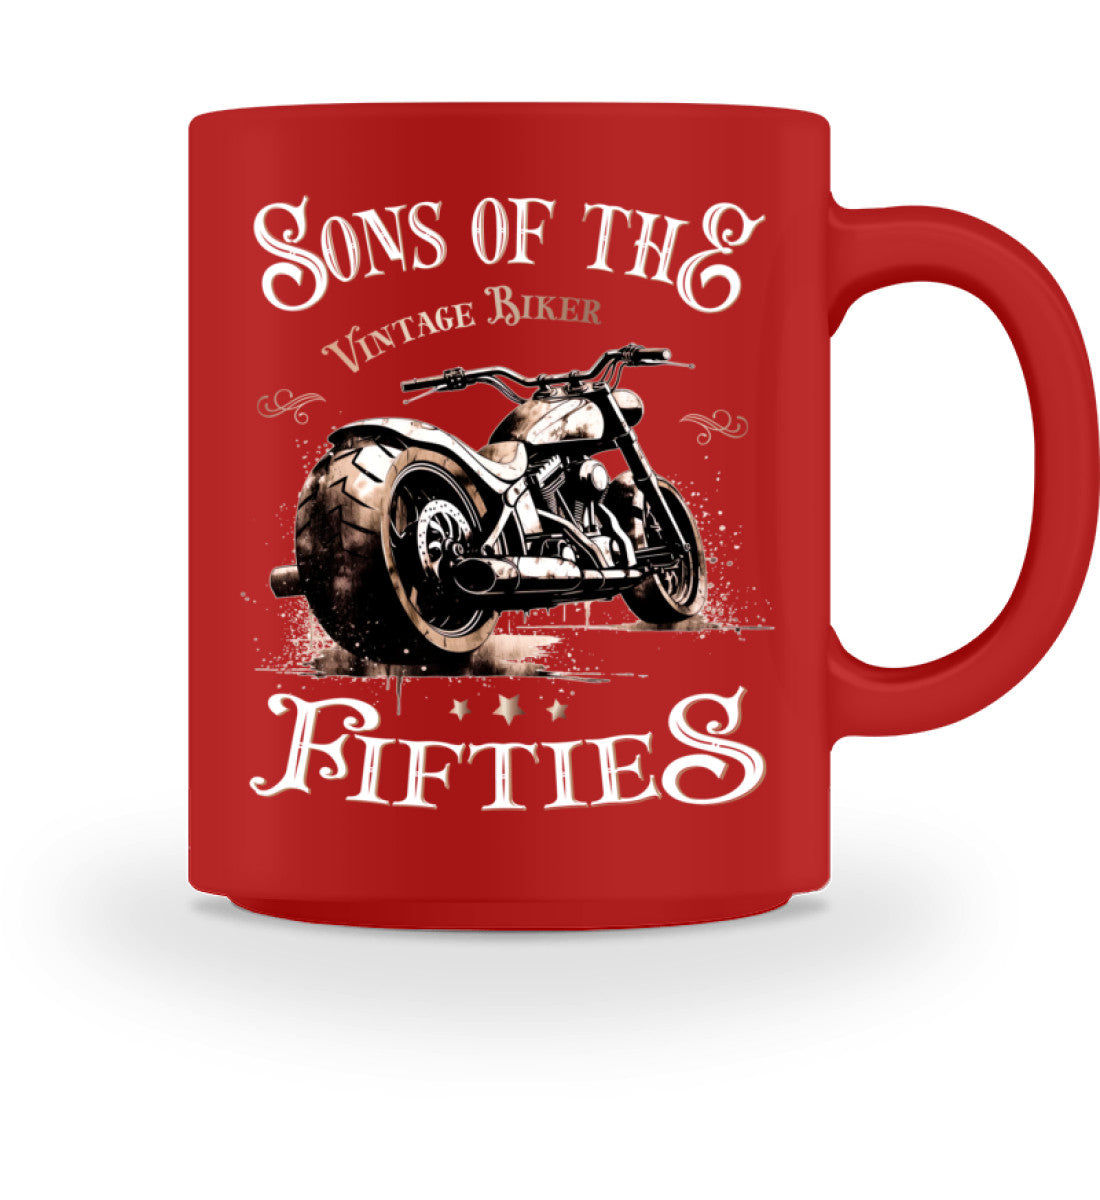 Eine Tasse für Motorradfahrer von Wingbikers, mit dem beidseitigen Aufdruck, Sons of the Fifties - Vintage Biker, in rot.